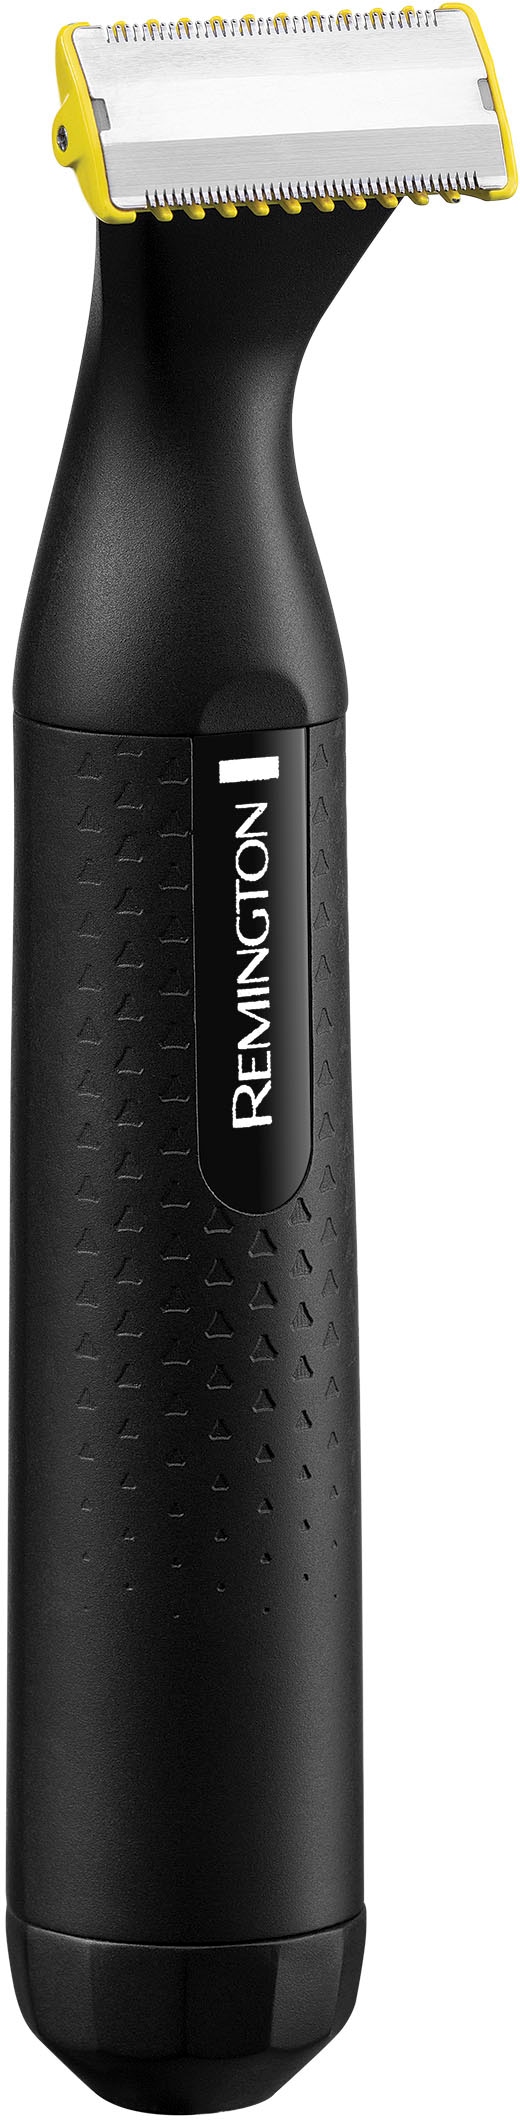 Remington Elektrorasierer »Omniblade Hybridgroomer HG1000«, 3 St. Aufsätze, Klinge bleibt 5 Jahre scharf**, 100 % wasserdicht